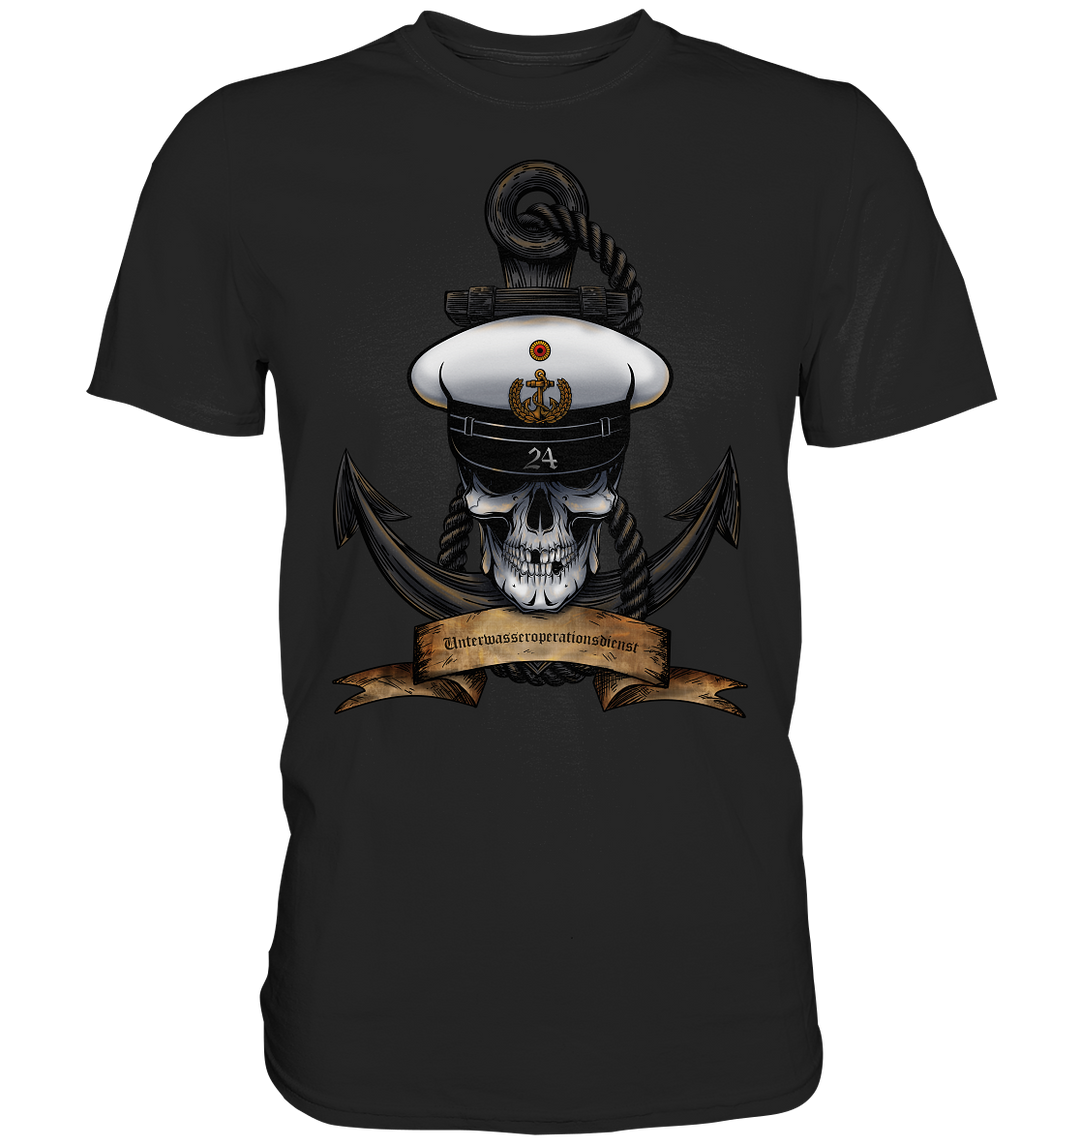 "Marine 24 - Unterwasseroperationsdienst" - Premium Shirt